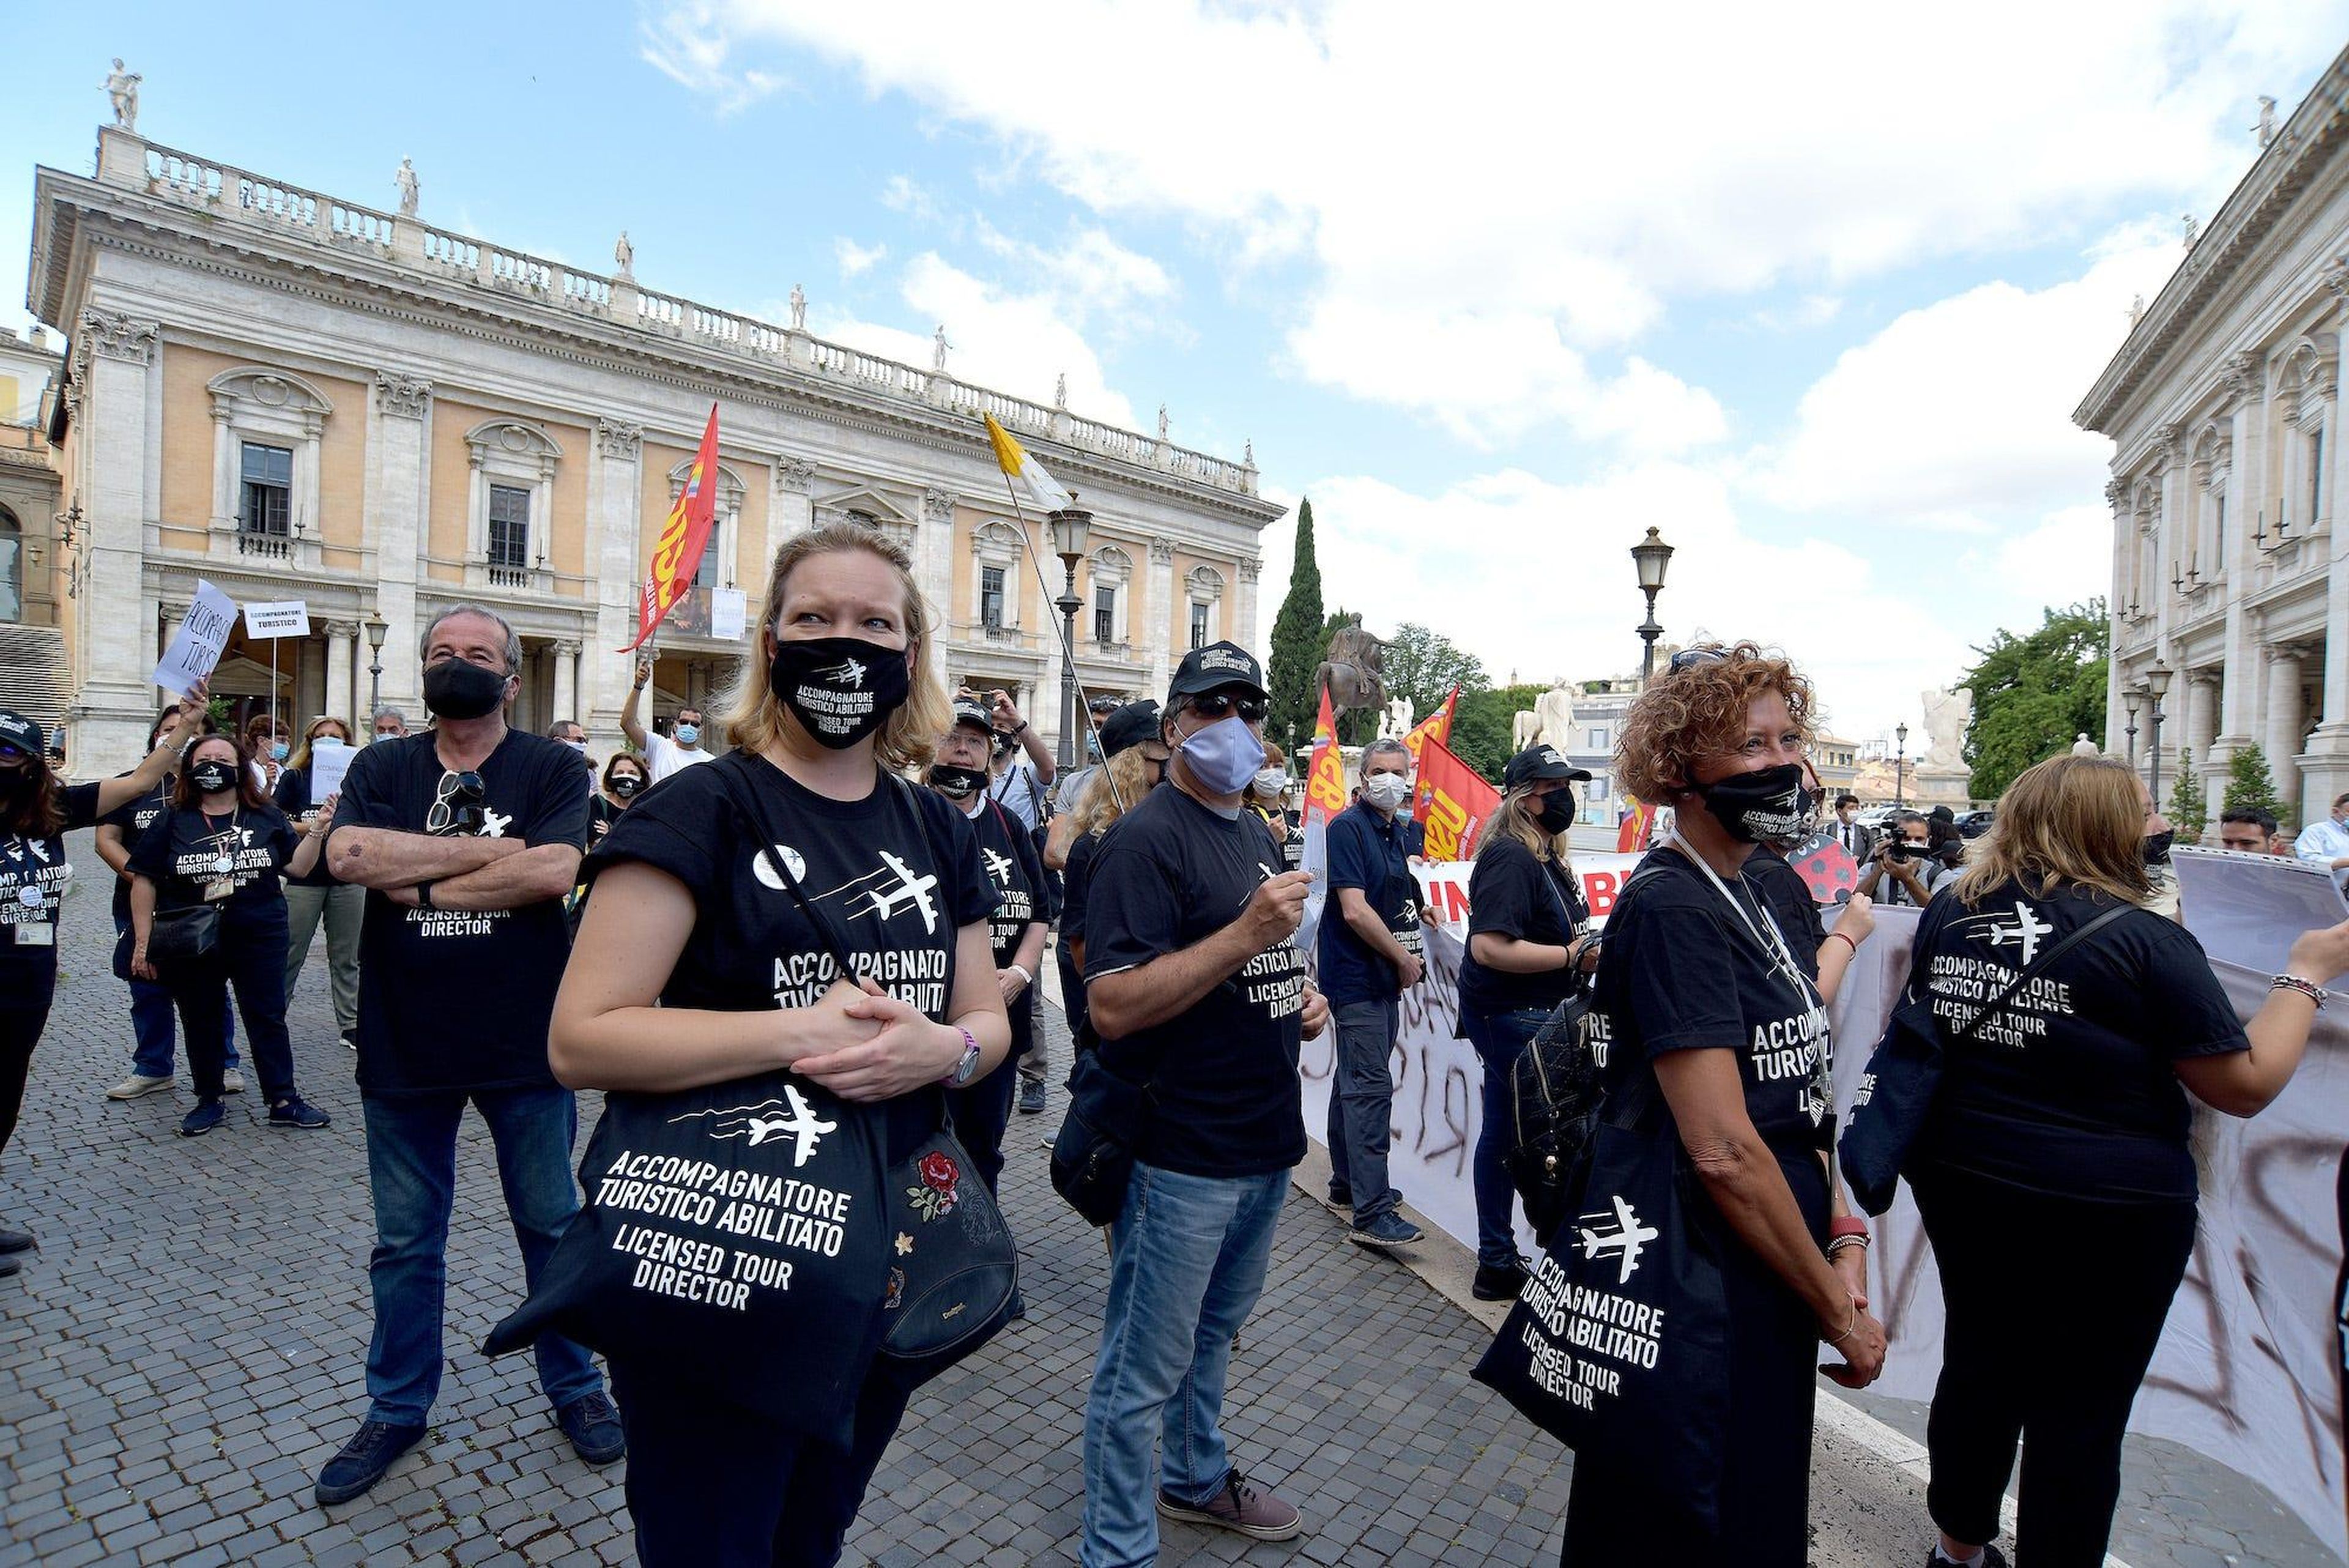 Los trabajadores del turismo protestan en el Campidoglio para exigir ingresos garantizados y una prohibición de despido hasta que el sector turístico en grave crisis se haya recuperado totalmente.